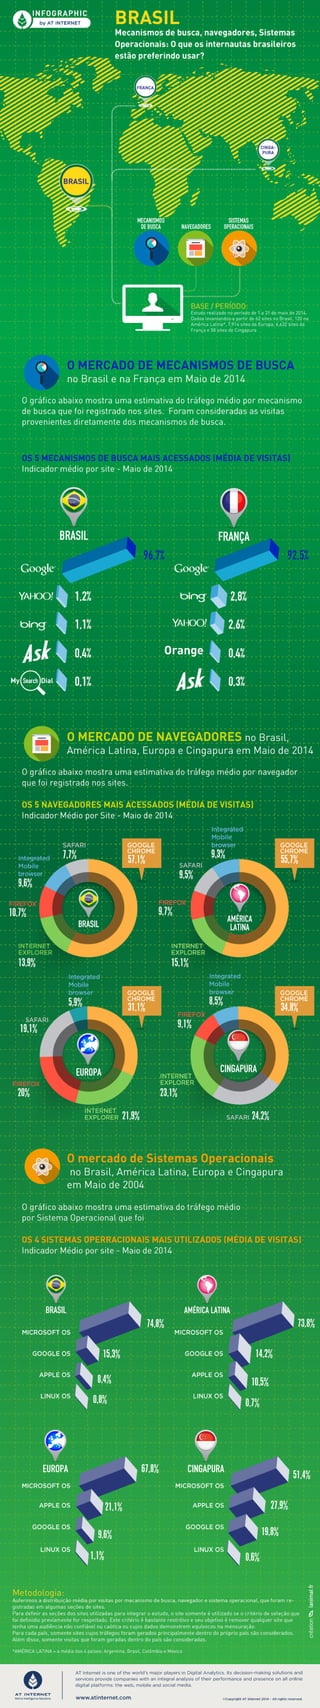 [Infográfico - Maio de 2014] Brasil: Mecanismos de busca, navegadores, Sistemas Operacionais